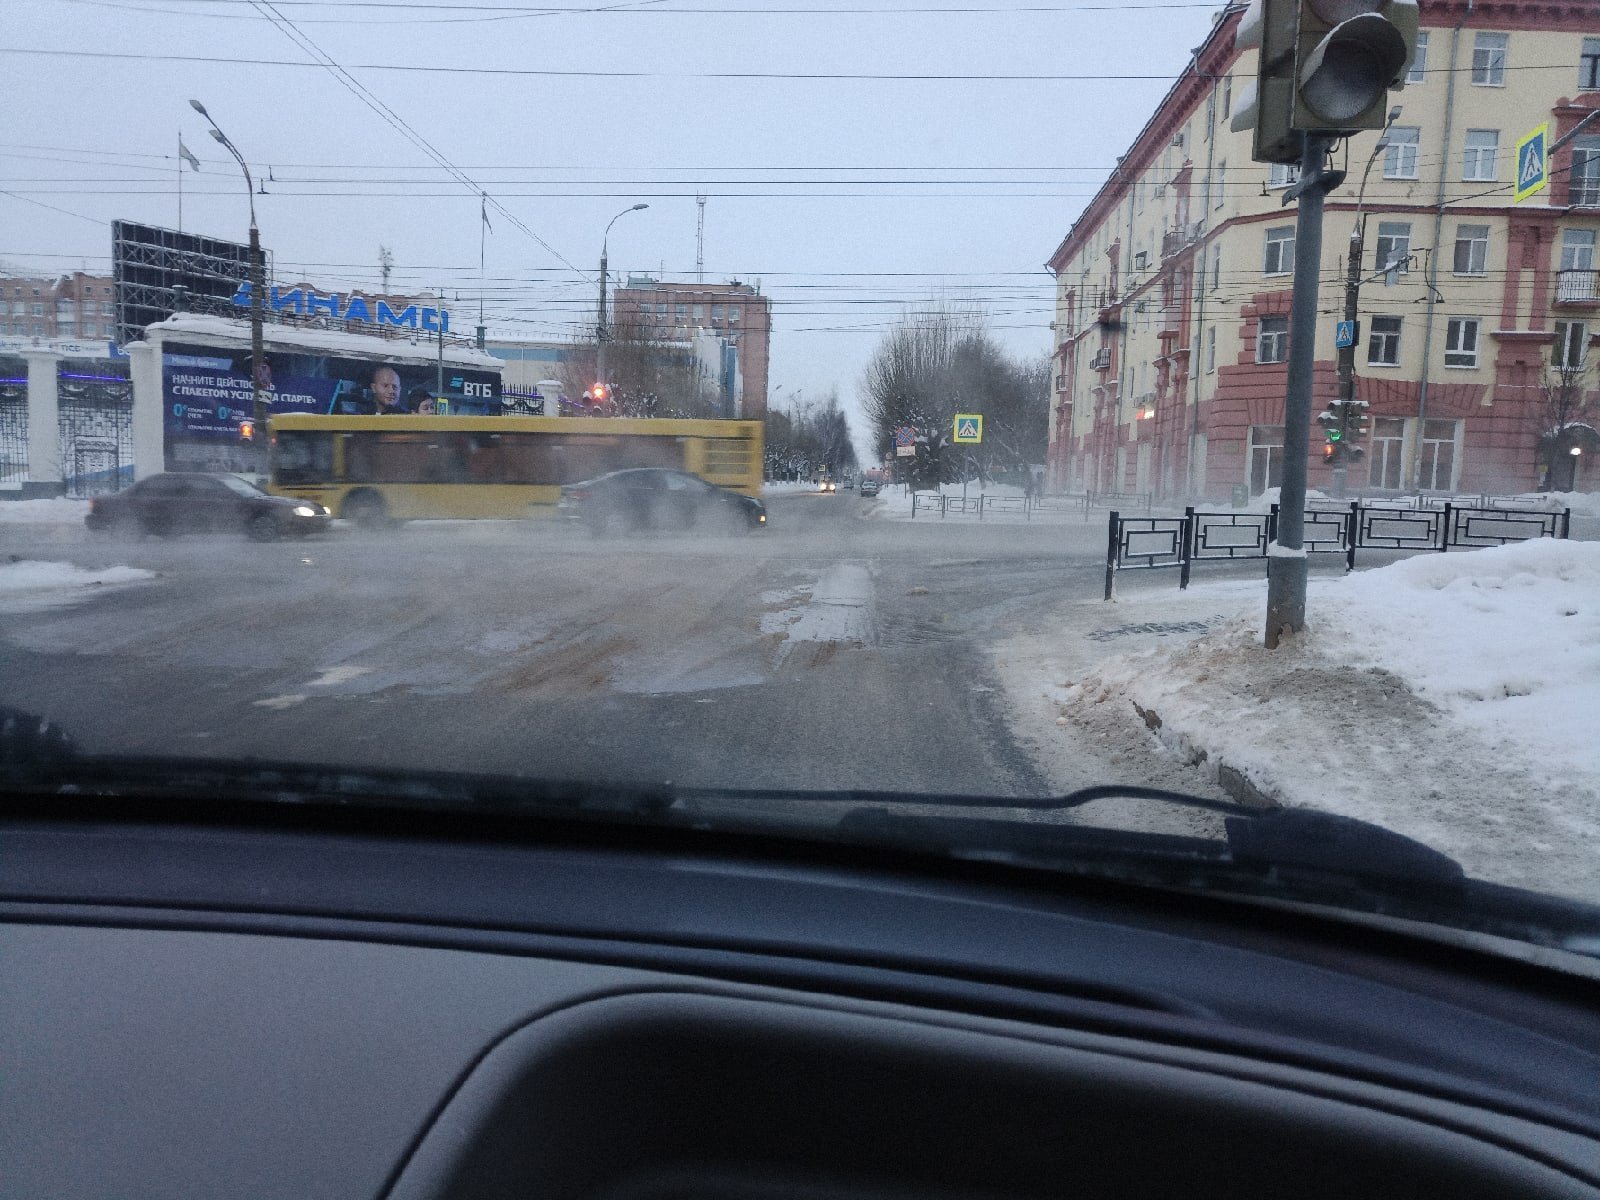 

Спецтехника устраняет последствия утечки воды на улице Пушкинской в Ижевске

